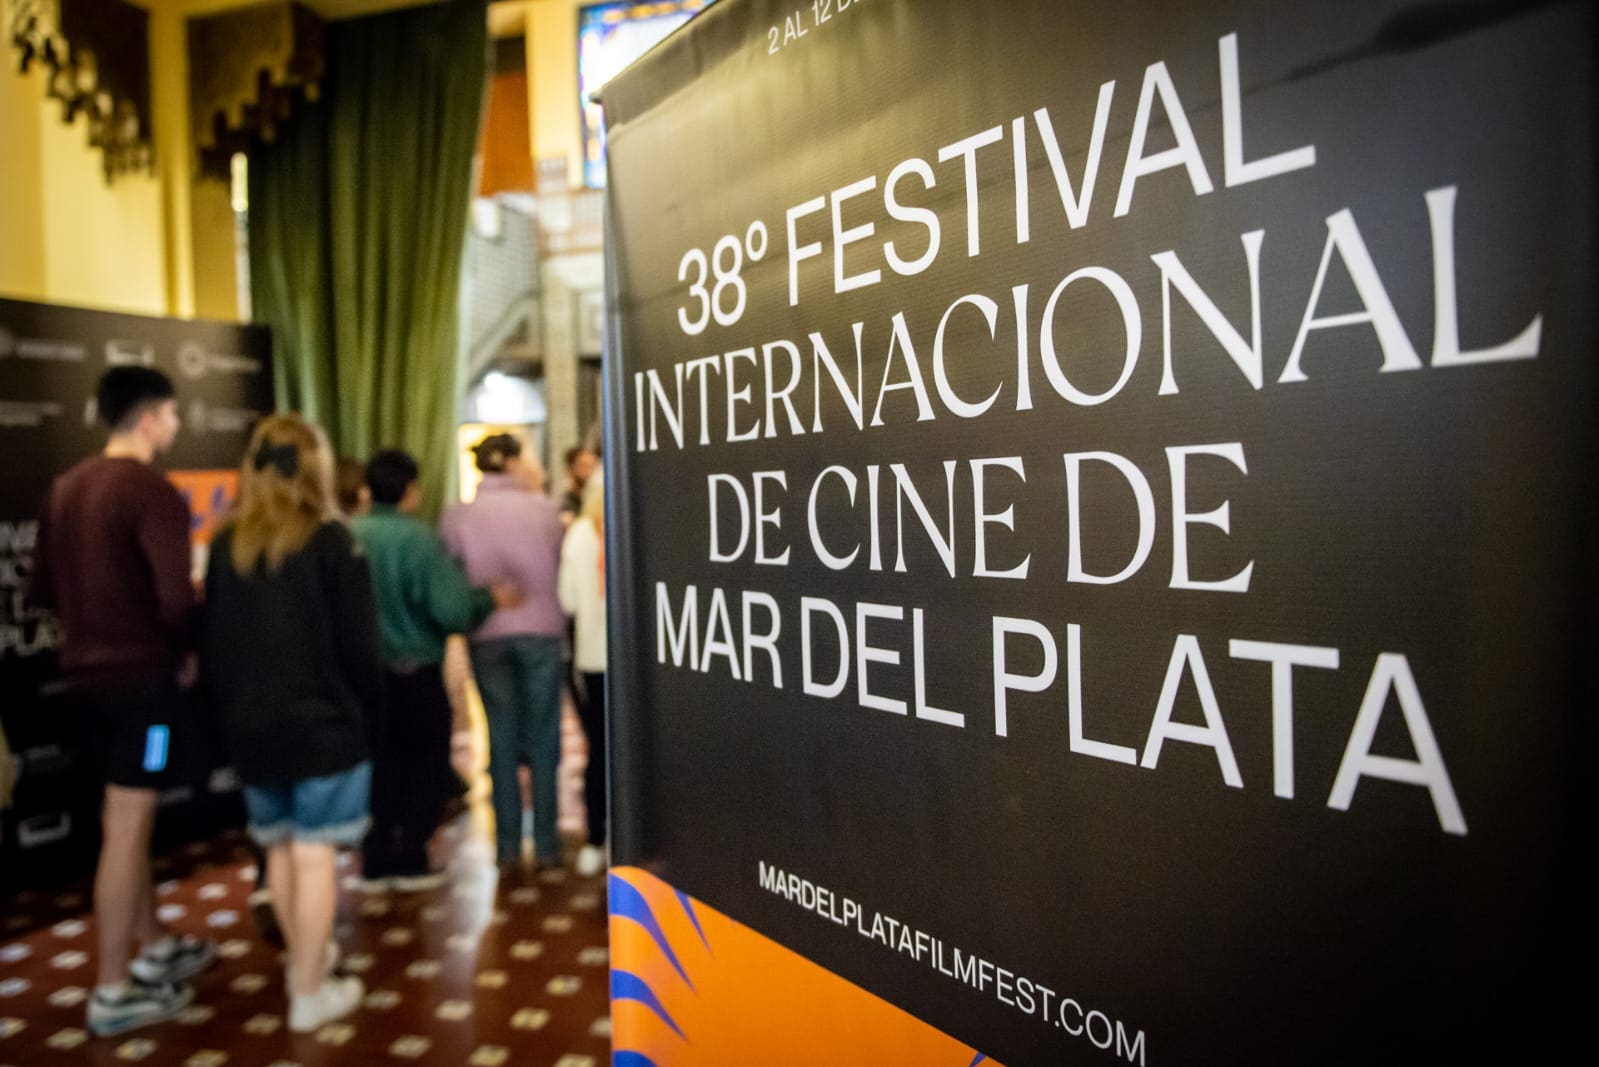 Capitales extranjeros interesados en desarrollar la industria audiovisual en Mar del Plata y potenciar el Festival Internacional de Cine